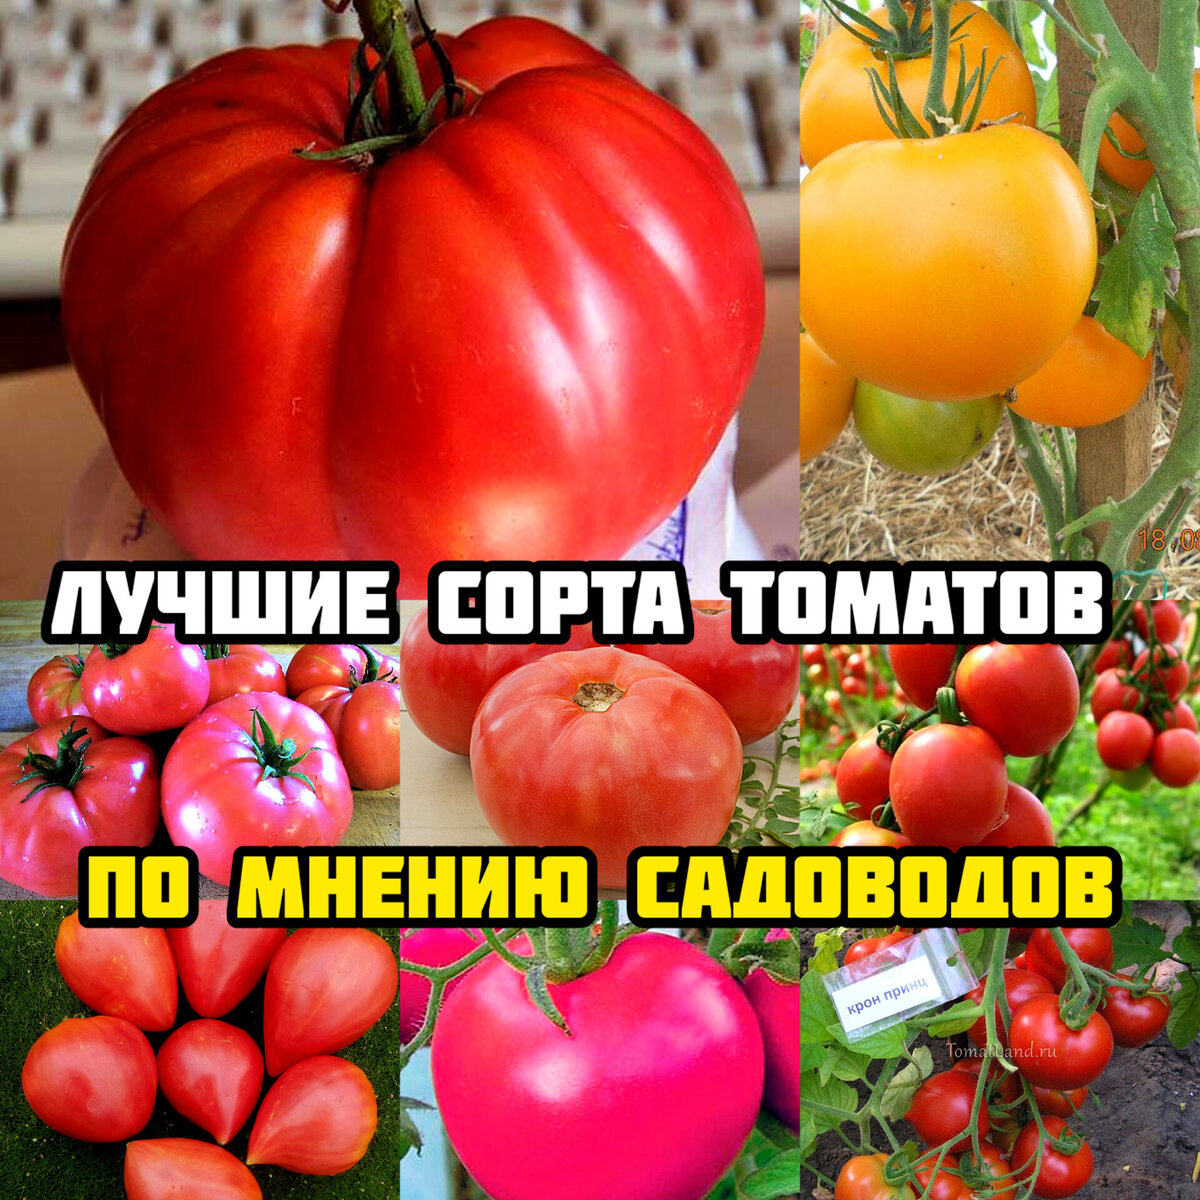 Купить семена томата огородник. Сорта крупных мясистых и очень ранних томатов. Софа сорт помидор. Сорт помидор Юнион. Смайлик помидор сорт.